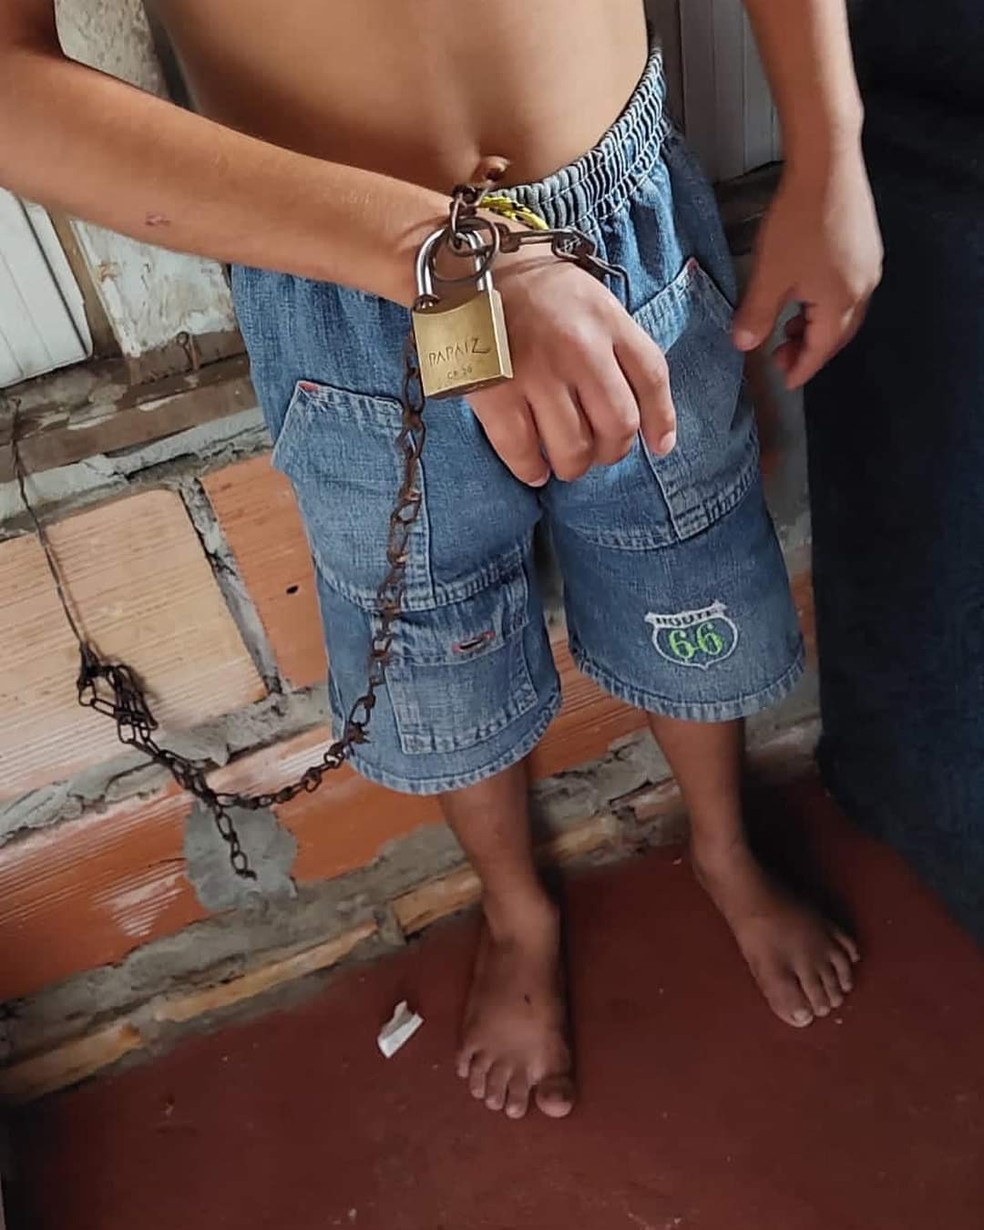 Criança torturada pelo pai em Manaus é resgatada pela Polícia Civil